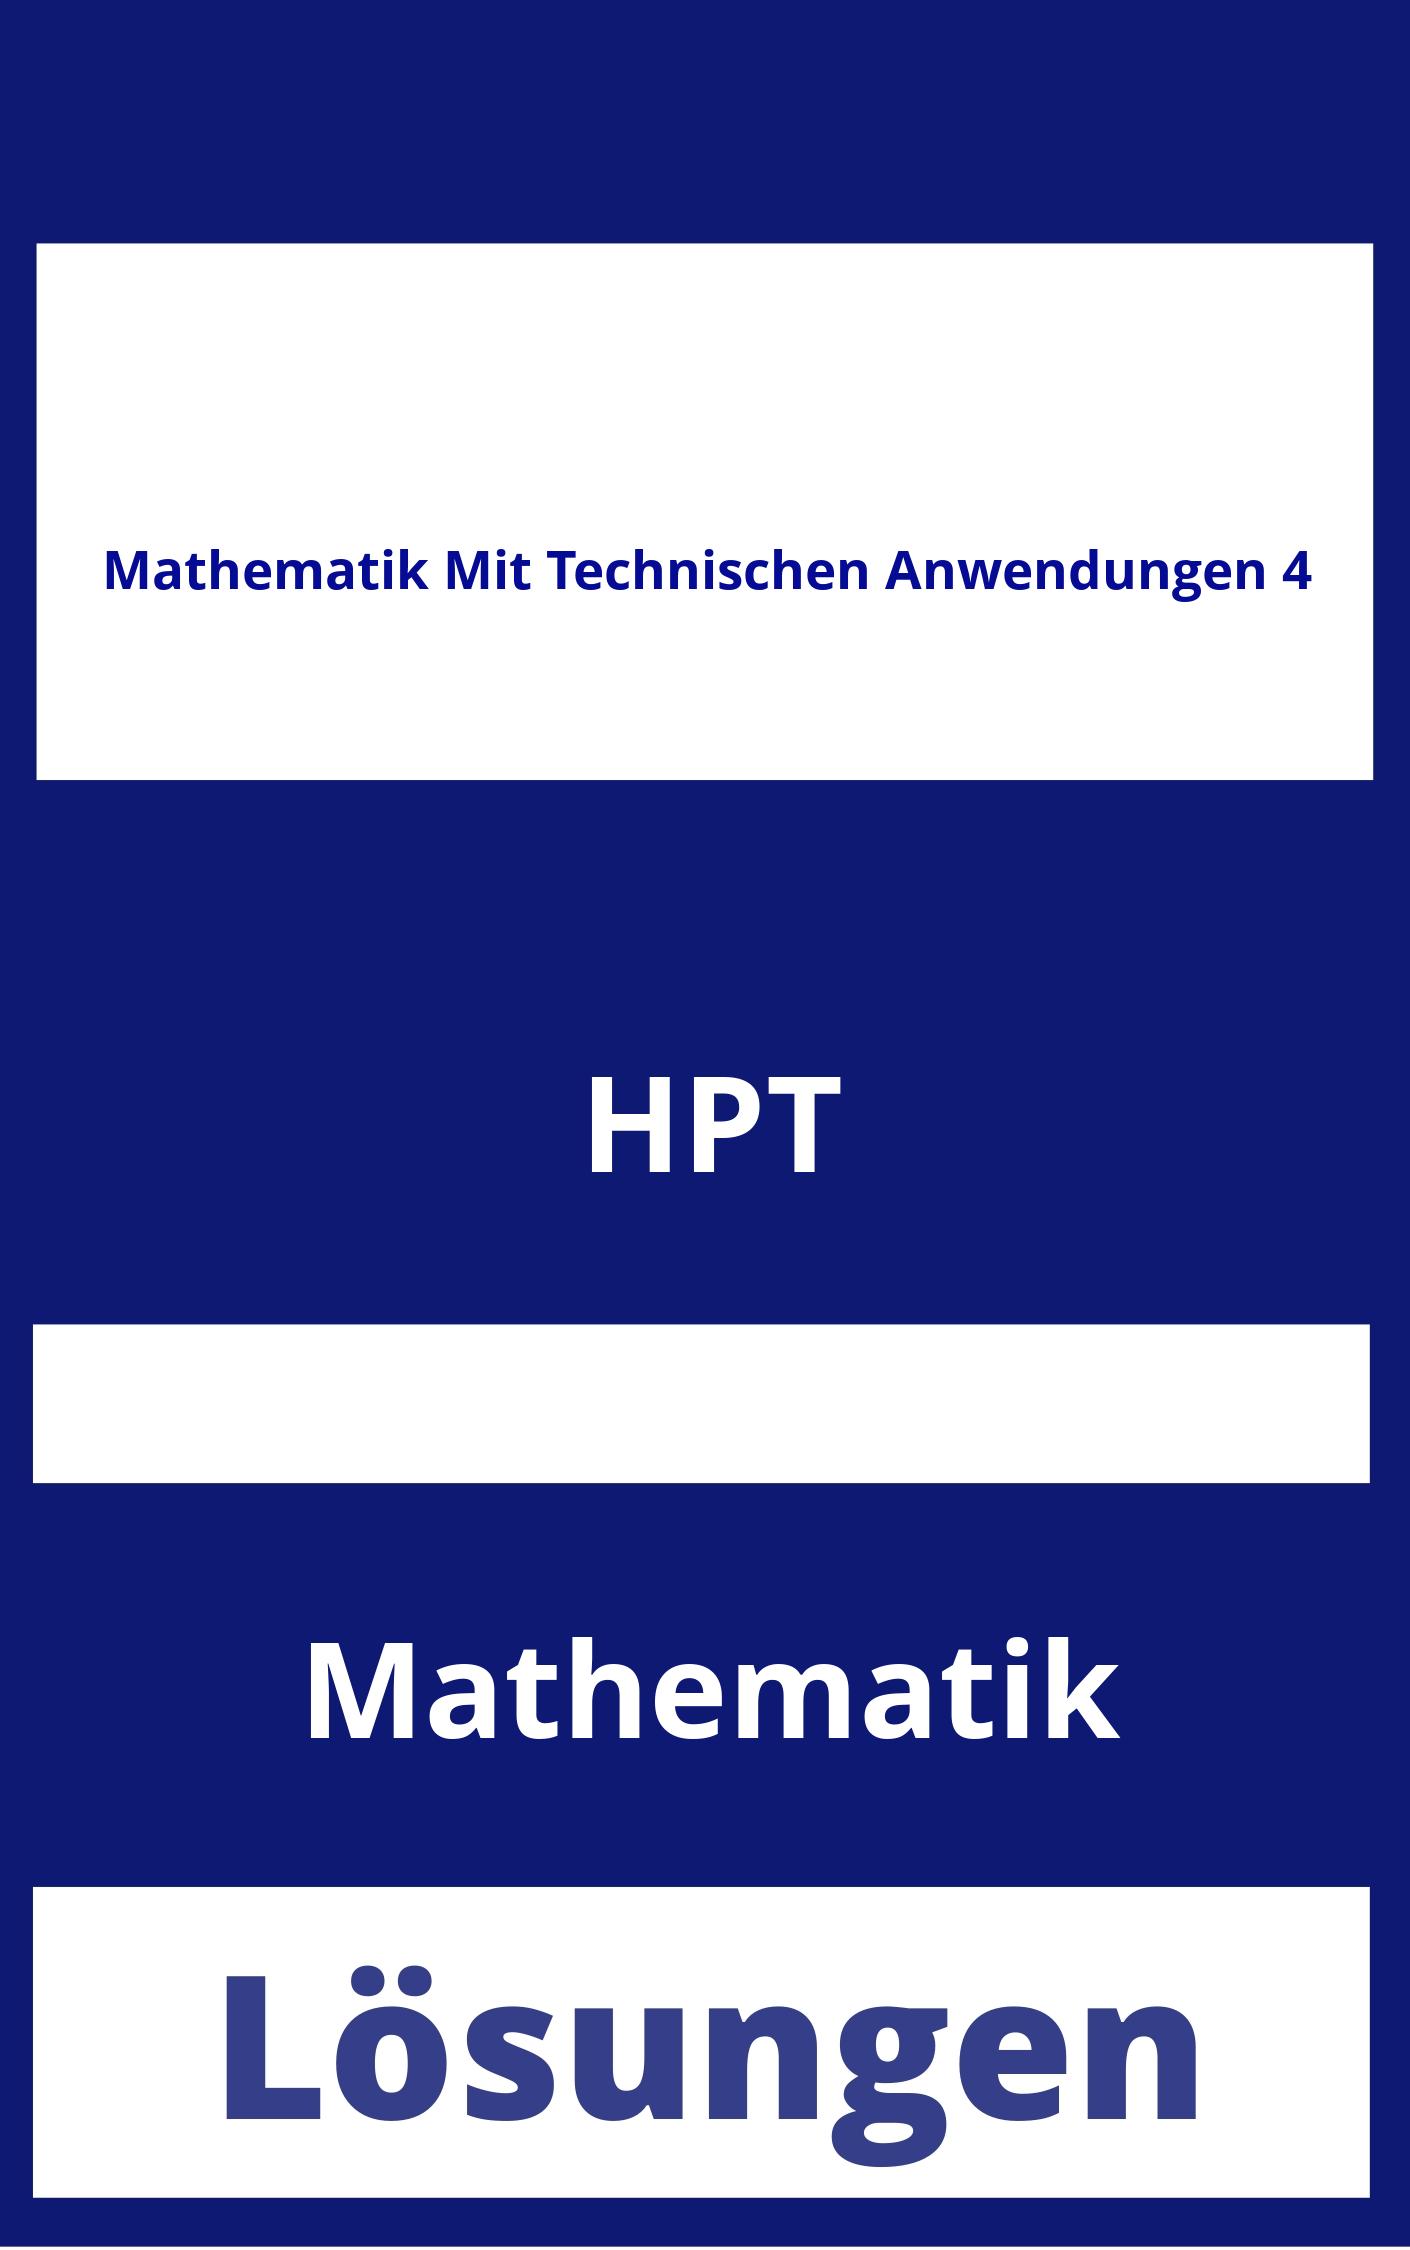 Mathematik Mit Technischen Anwendungen 4 Lösungen PDF